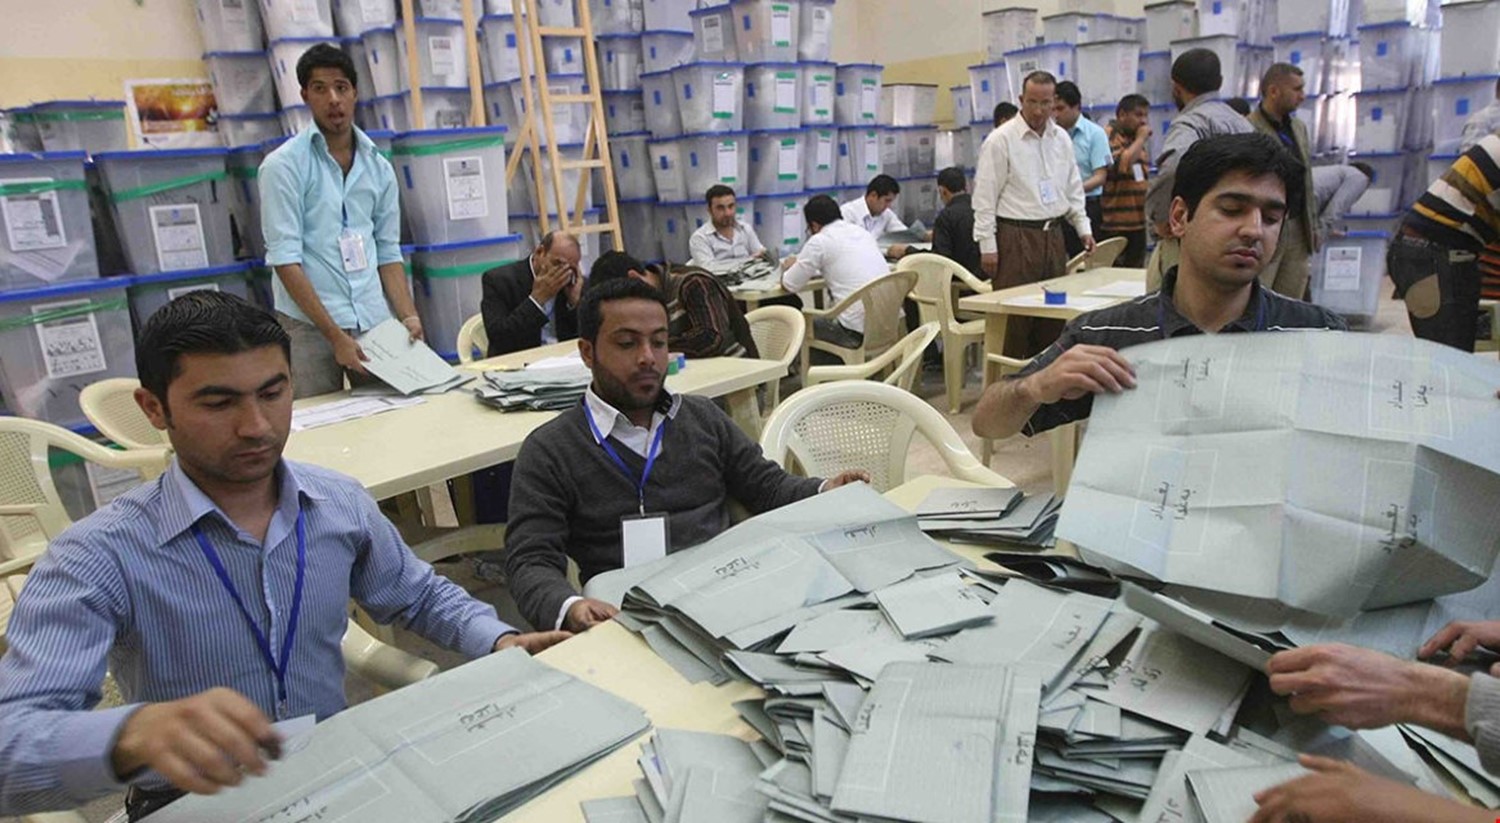 العراق .. مفوضية الانتخابات تعلق على مزاعم "بيع مقاعد البرلمان"